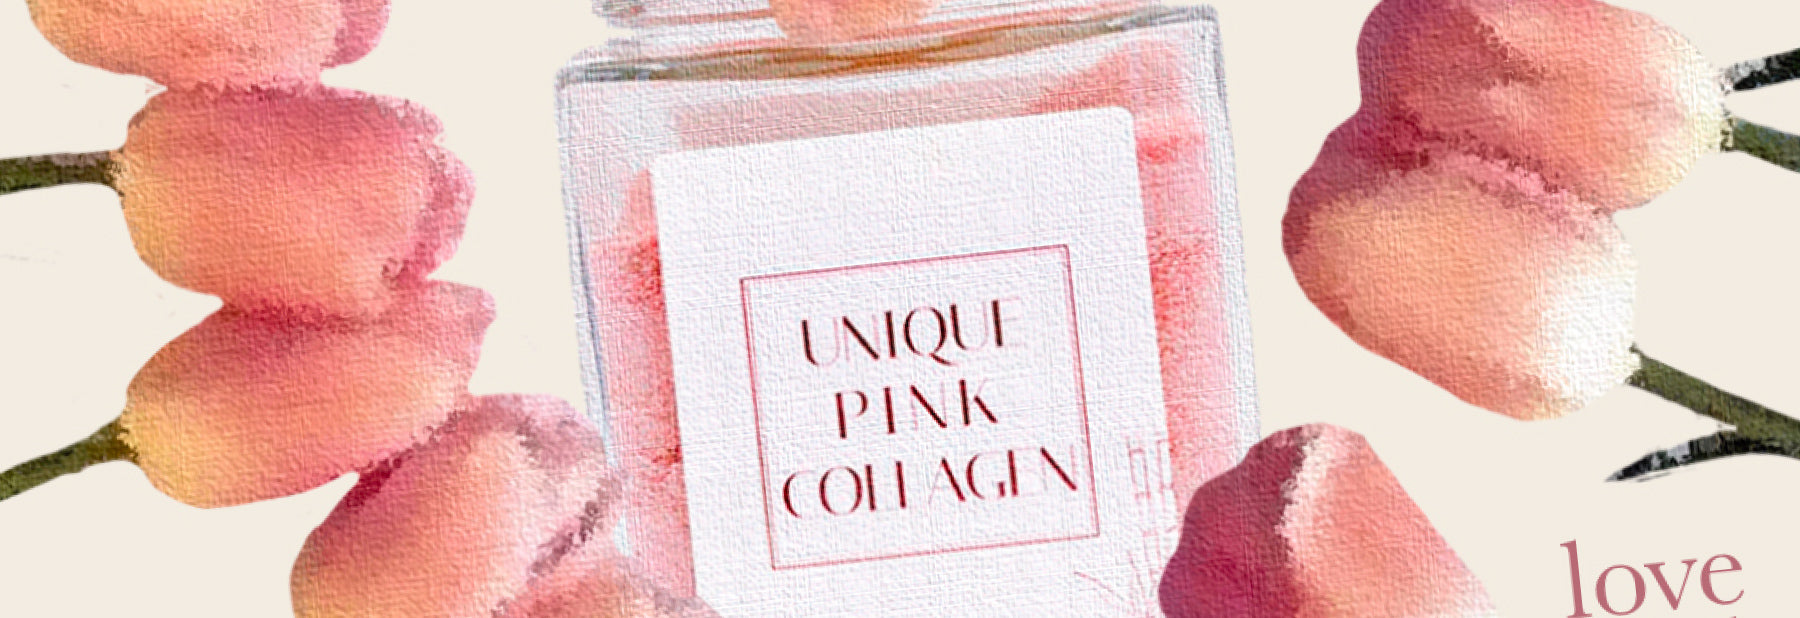 Pink Collagen: El Ingrediente mágico que potencia luminosidad para la piel